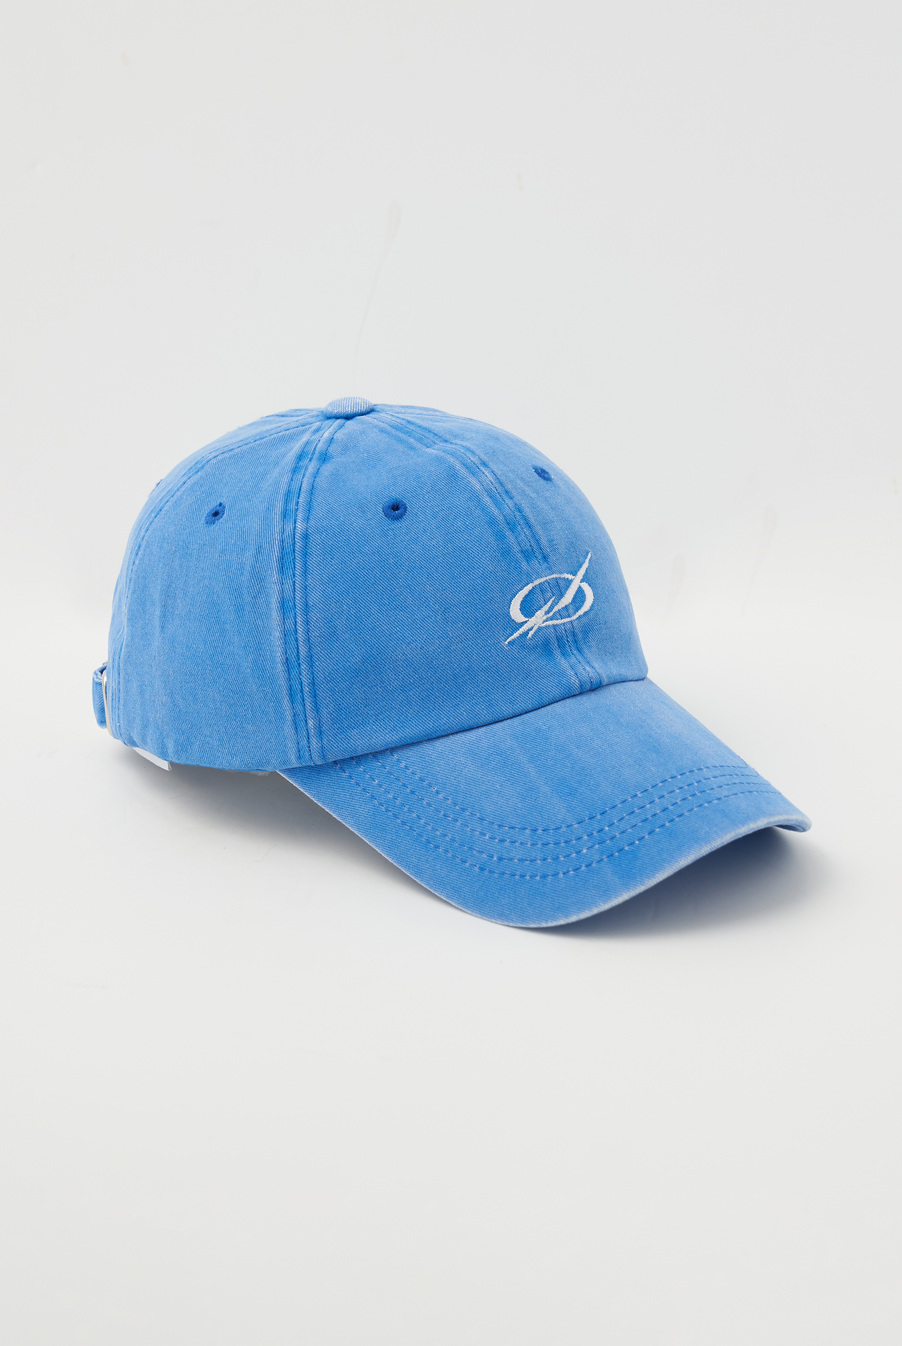 WASHED LOGO CAP - BLUE